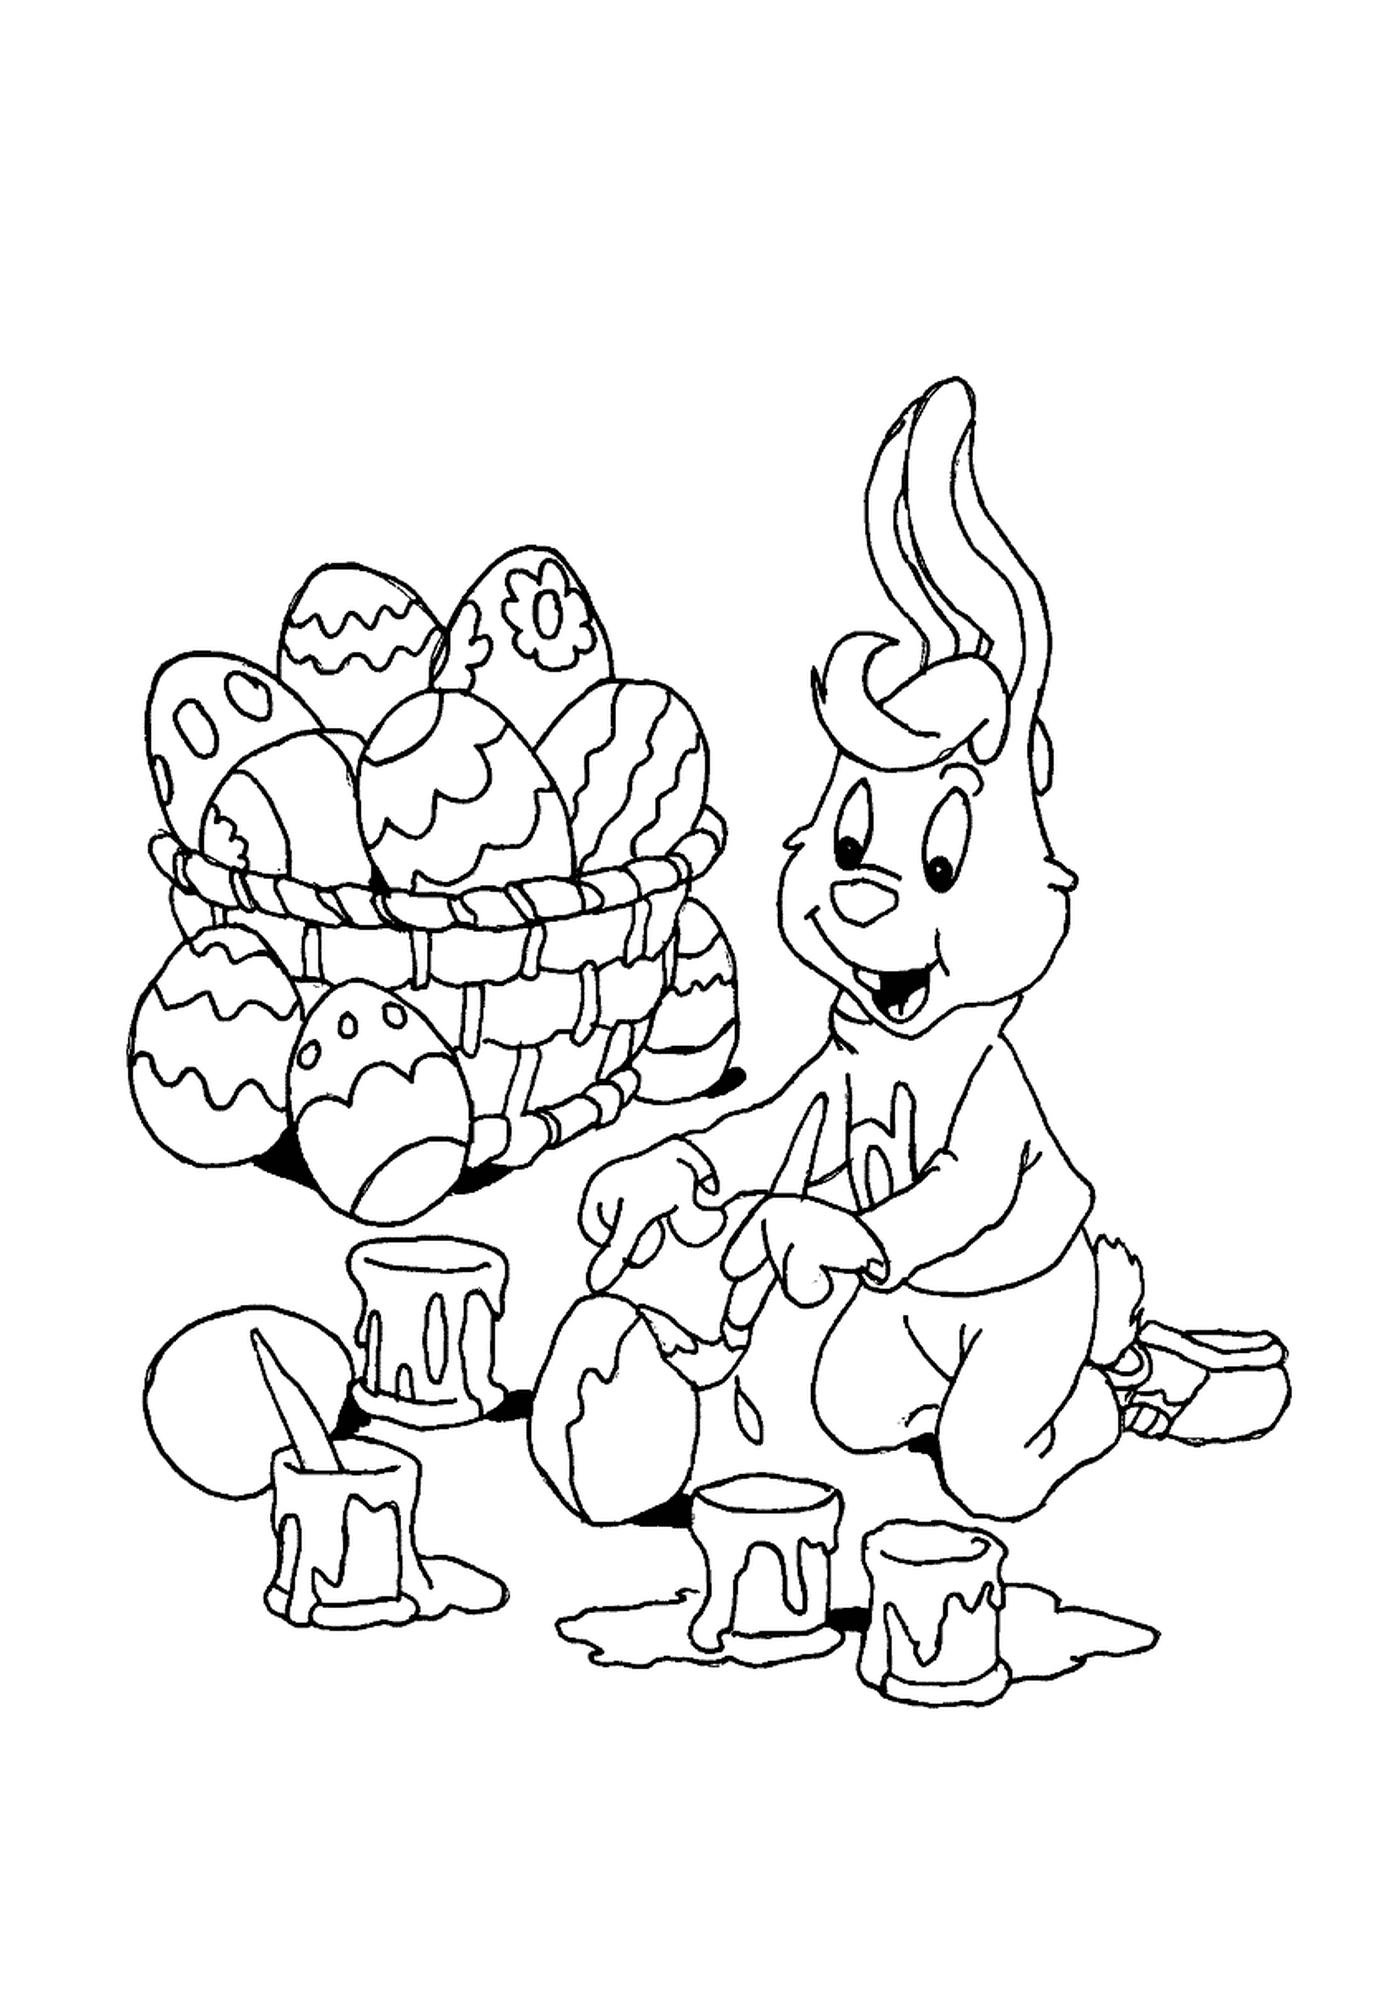  अंडे की टोकरी के सामने एक ईस्टर खरगोश 